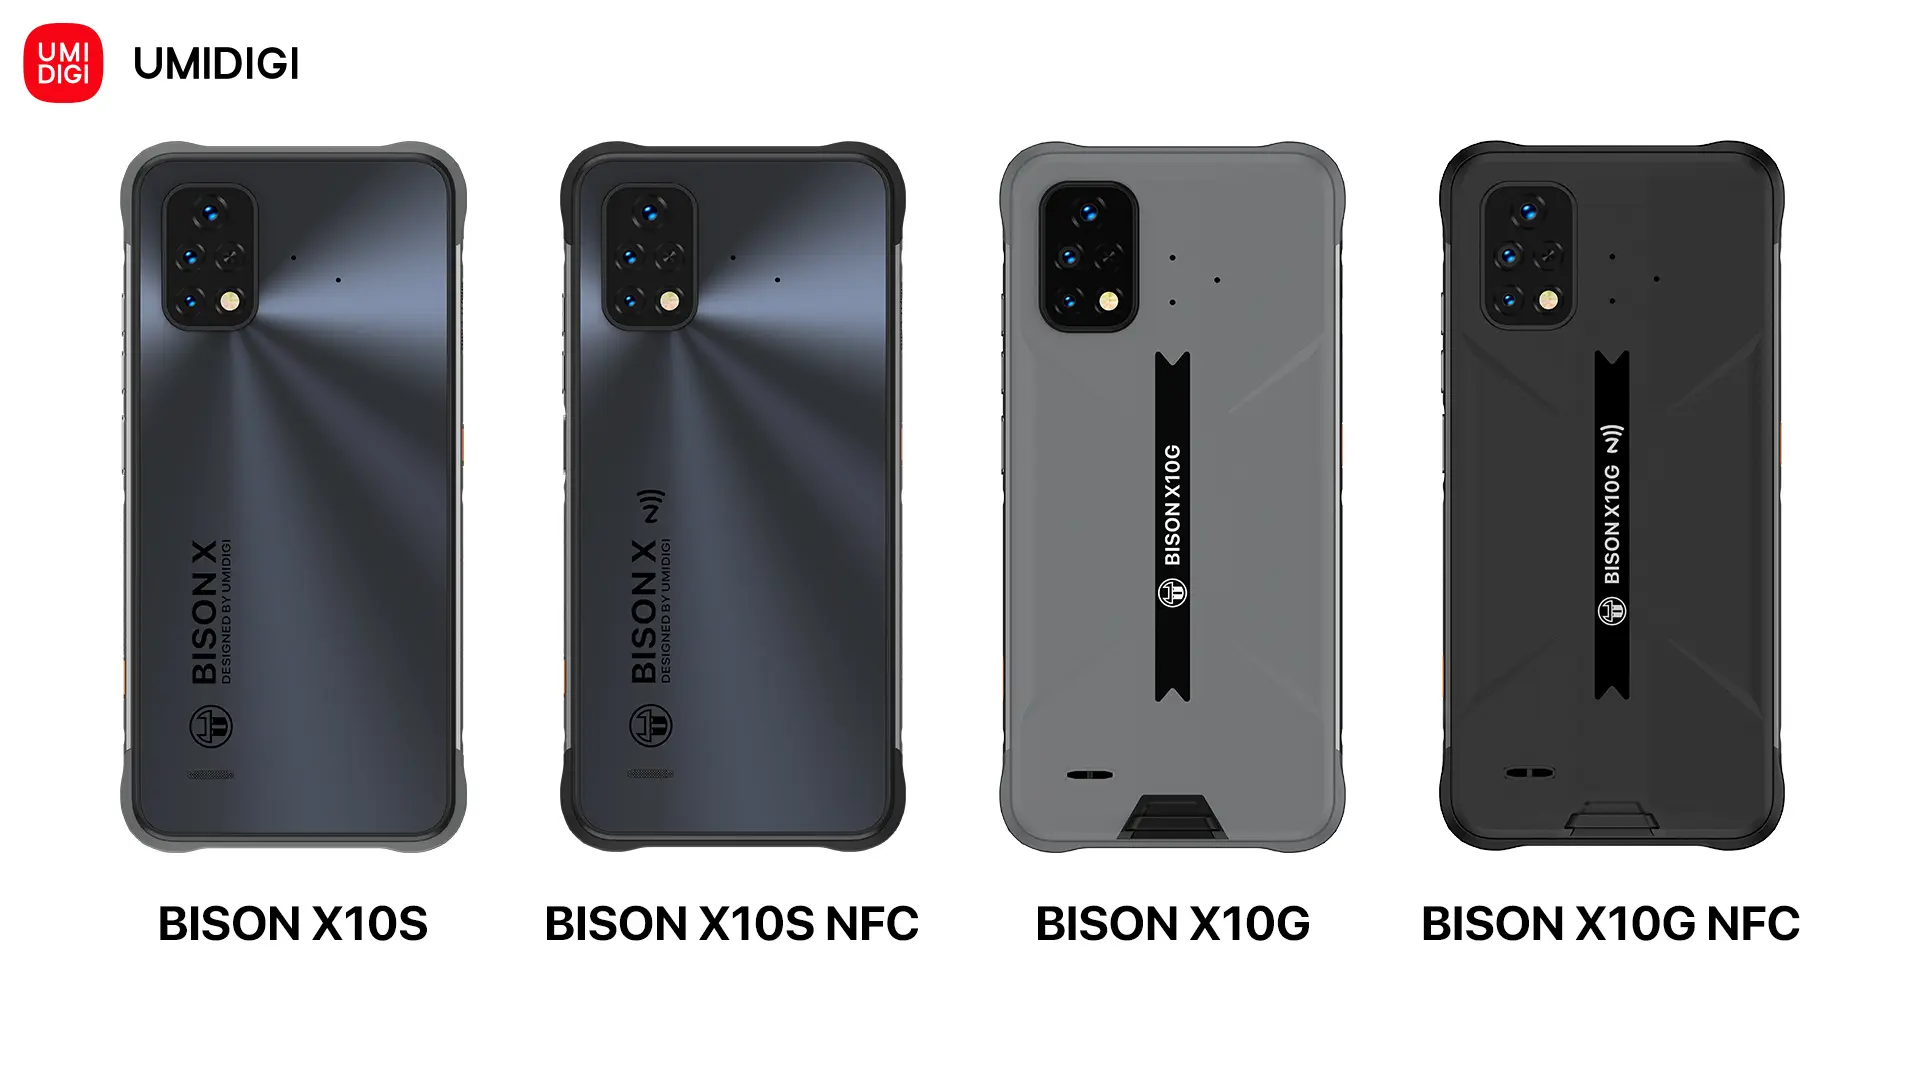 UMIDIGI presenta su nueva serie BISON X10, sus nuevos smartphones más baratos